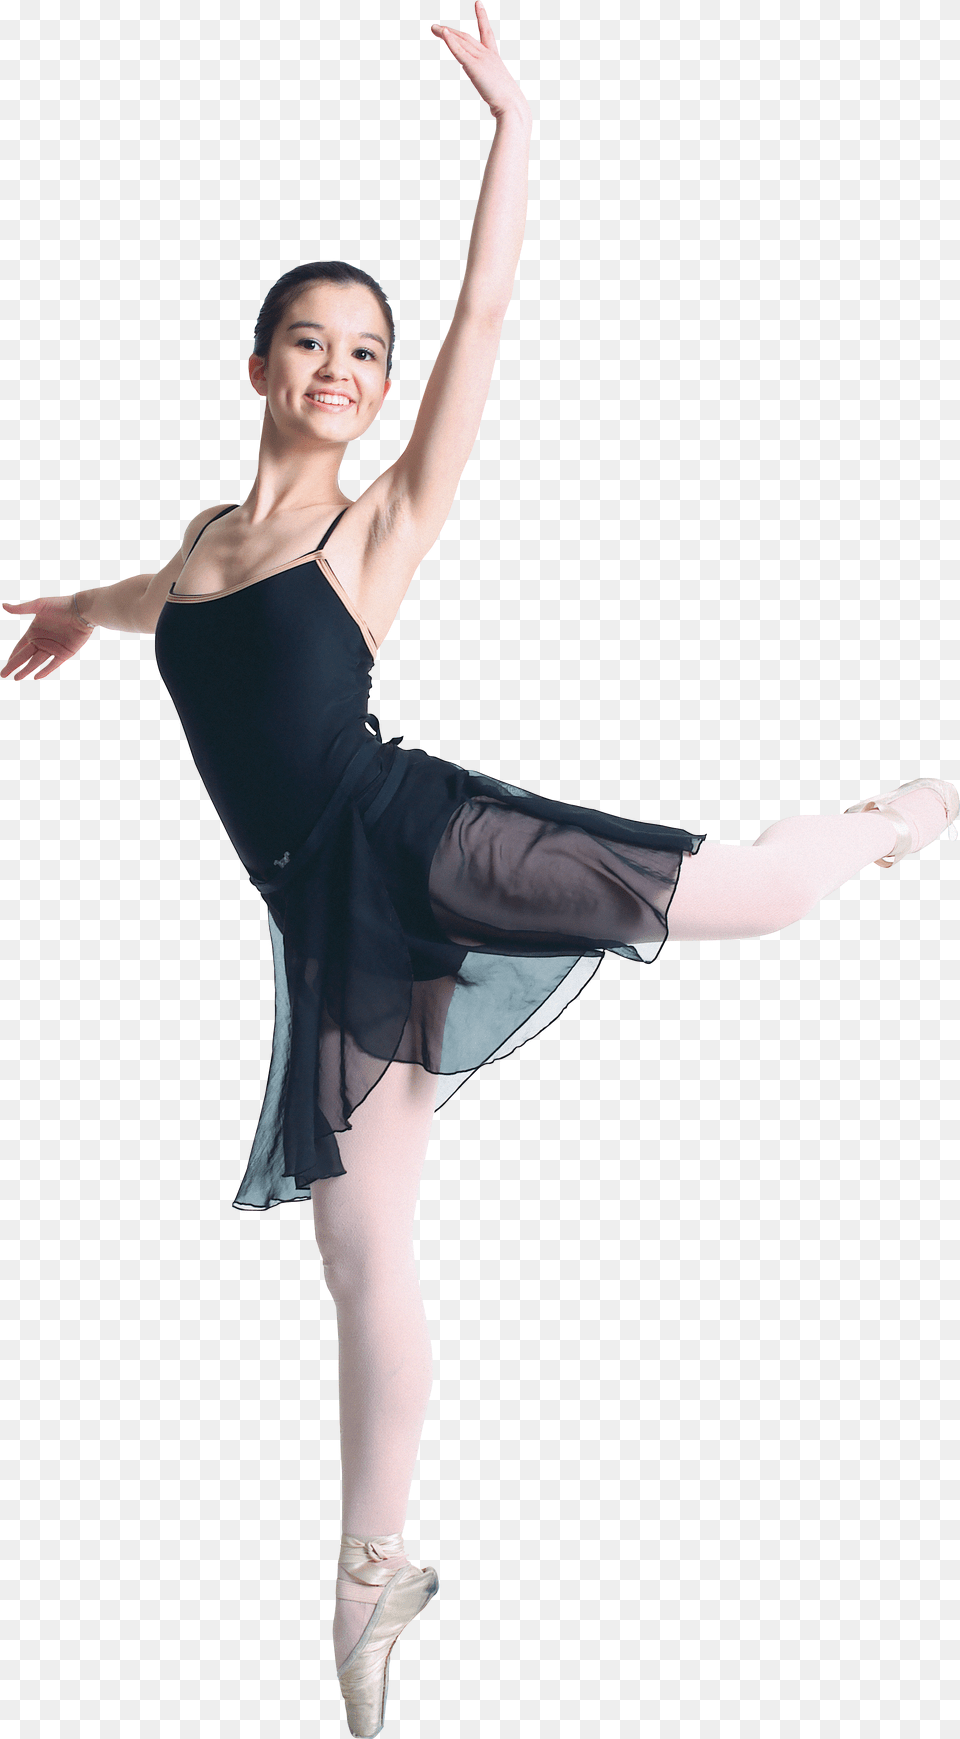 Ballet Dancer, Ballerina, Person, Dancing, Leisure Activities Free Png Download